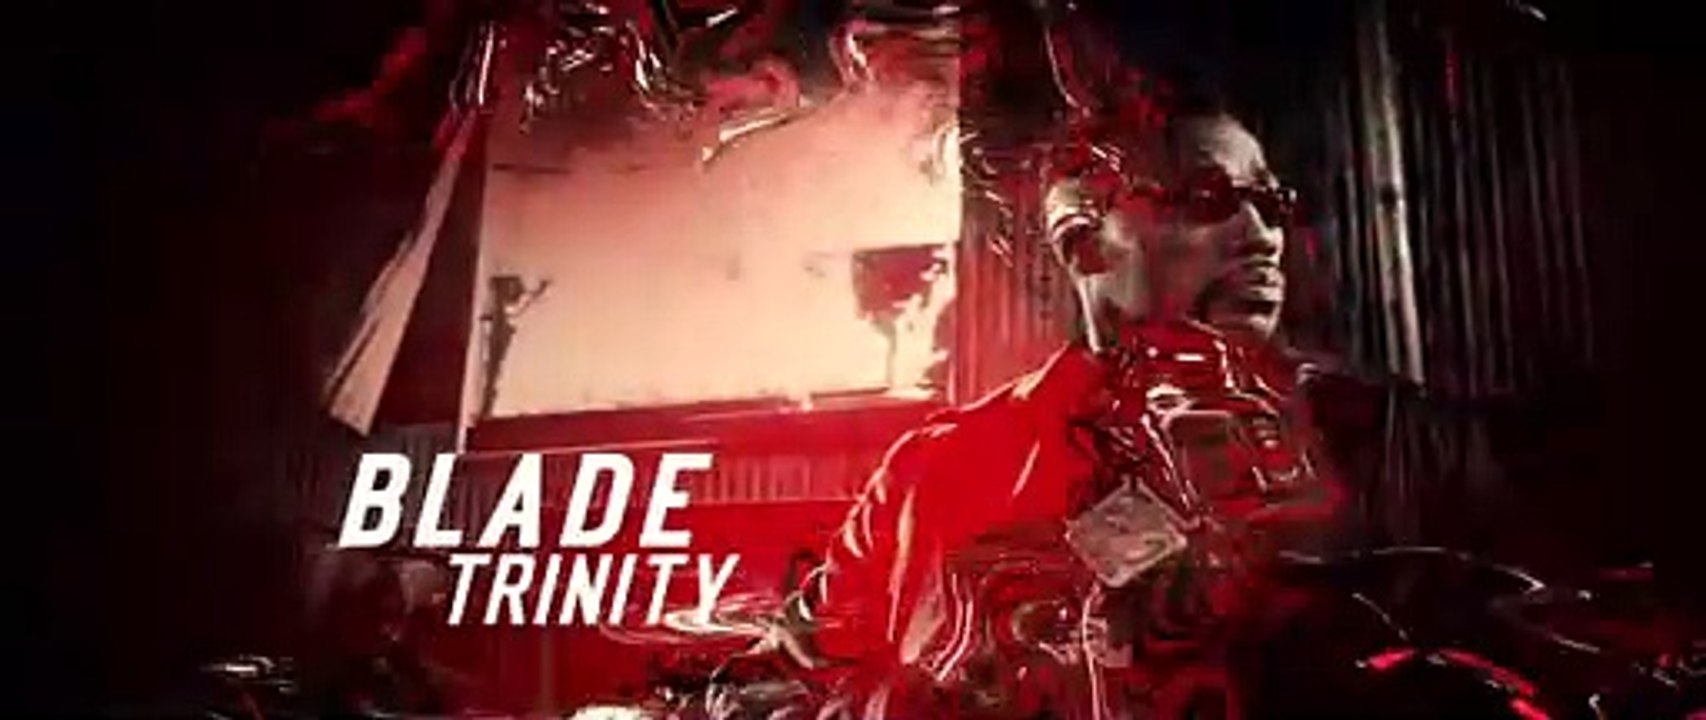 Blade- Trinity (2004) stream deutsch anschauen